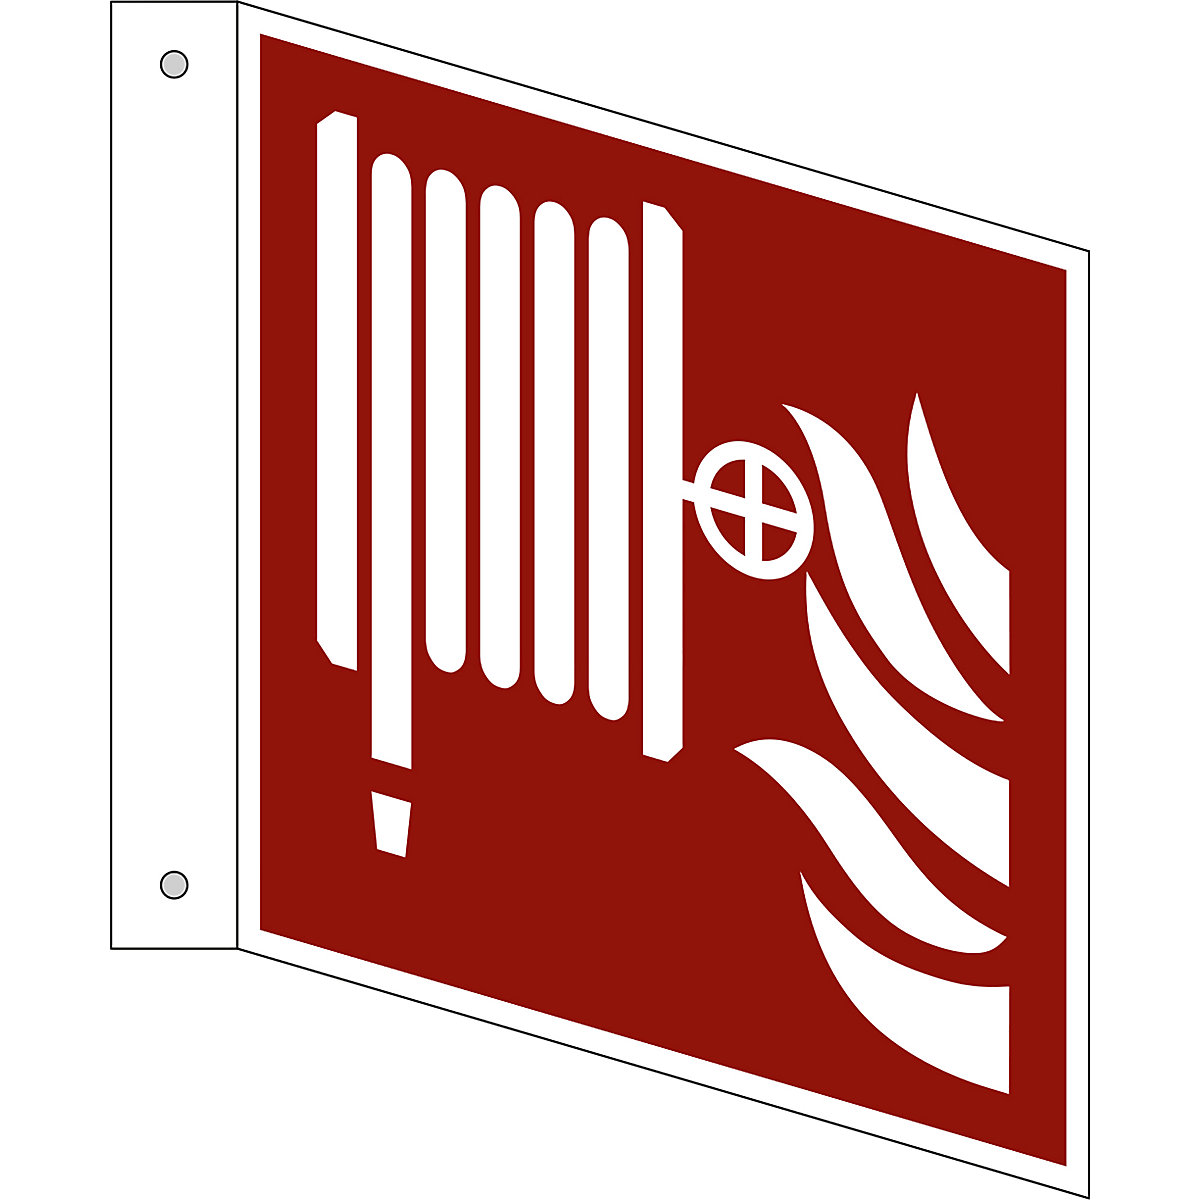 Značka pro ochranu proti požáru, požární hadice, bal.j. 10 ks, plast, vlajkový štítek, 150 x 150 mm